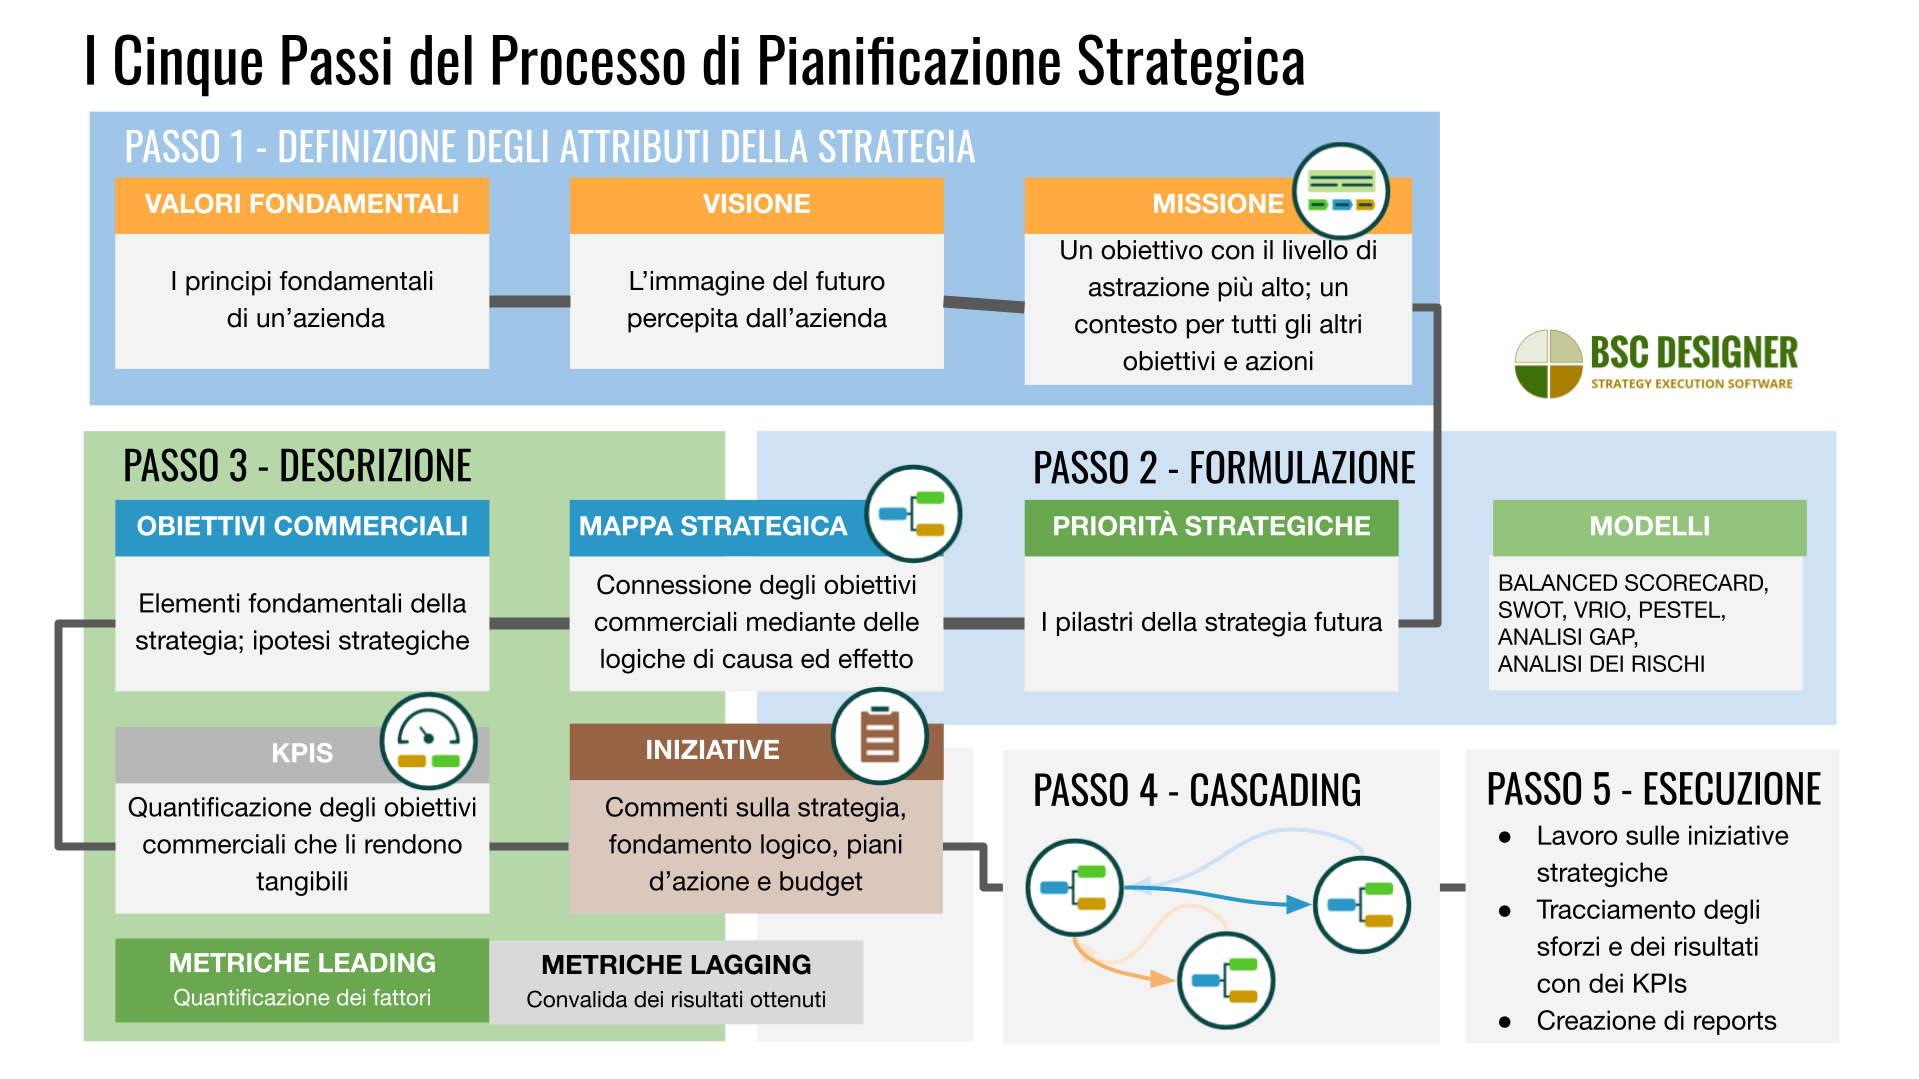 5 fasi del processo di pianificazione strategica dalla definizione di valori, visione e missione alla descrizione della strategia su mappe strategiche con obiettivi aziendali, KPI e iniziative.